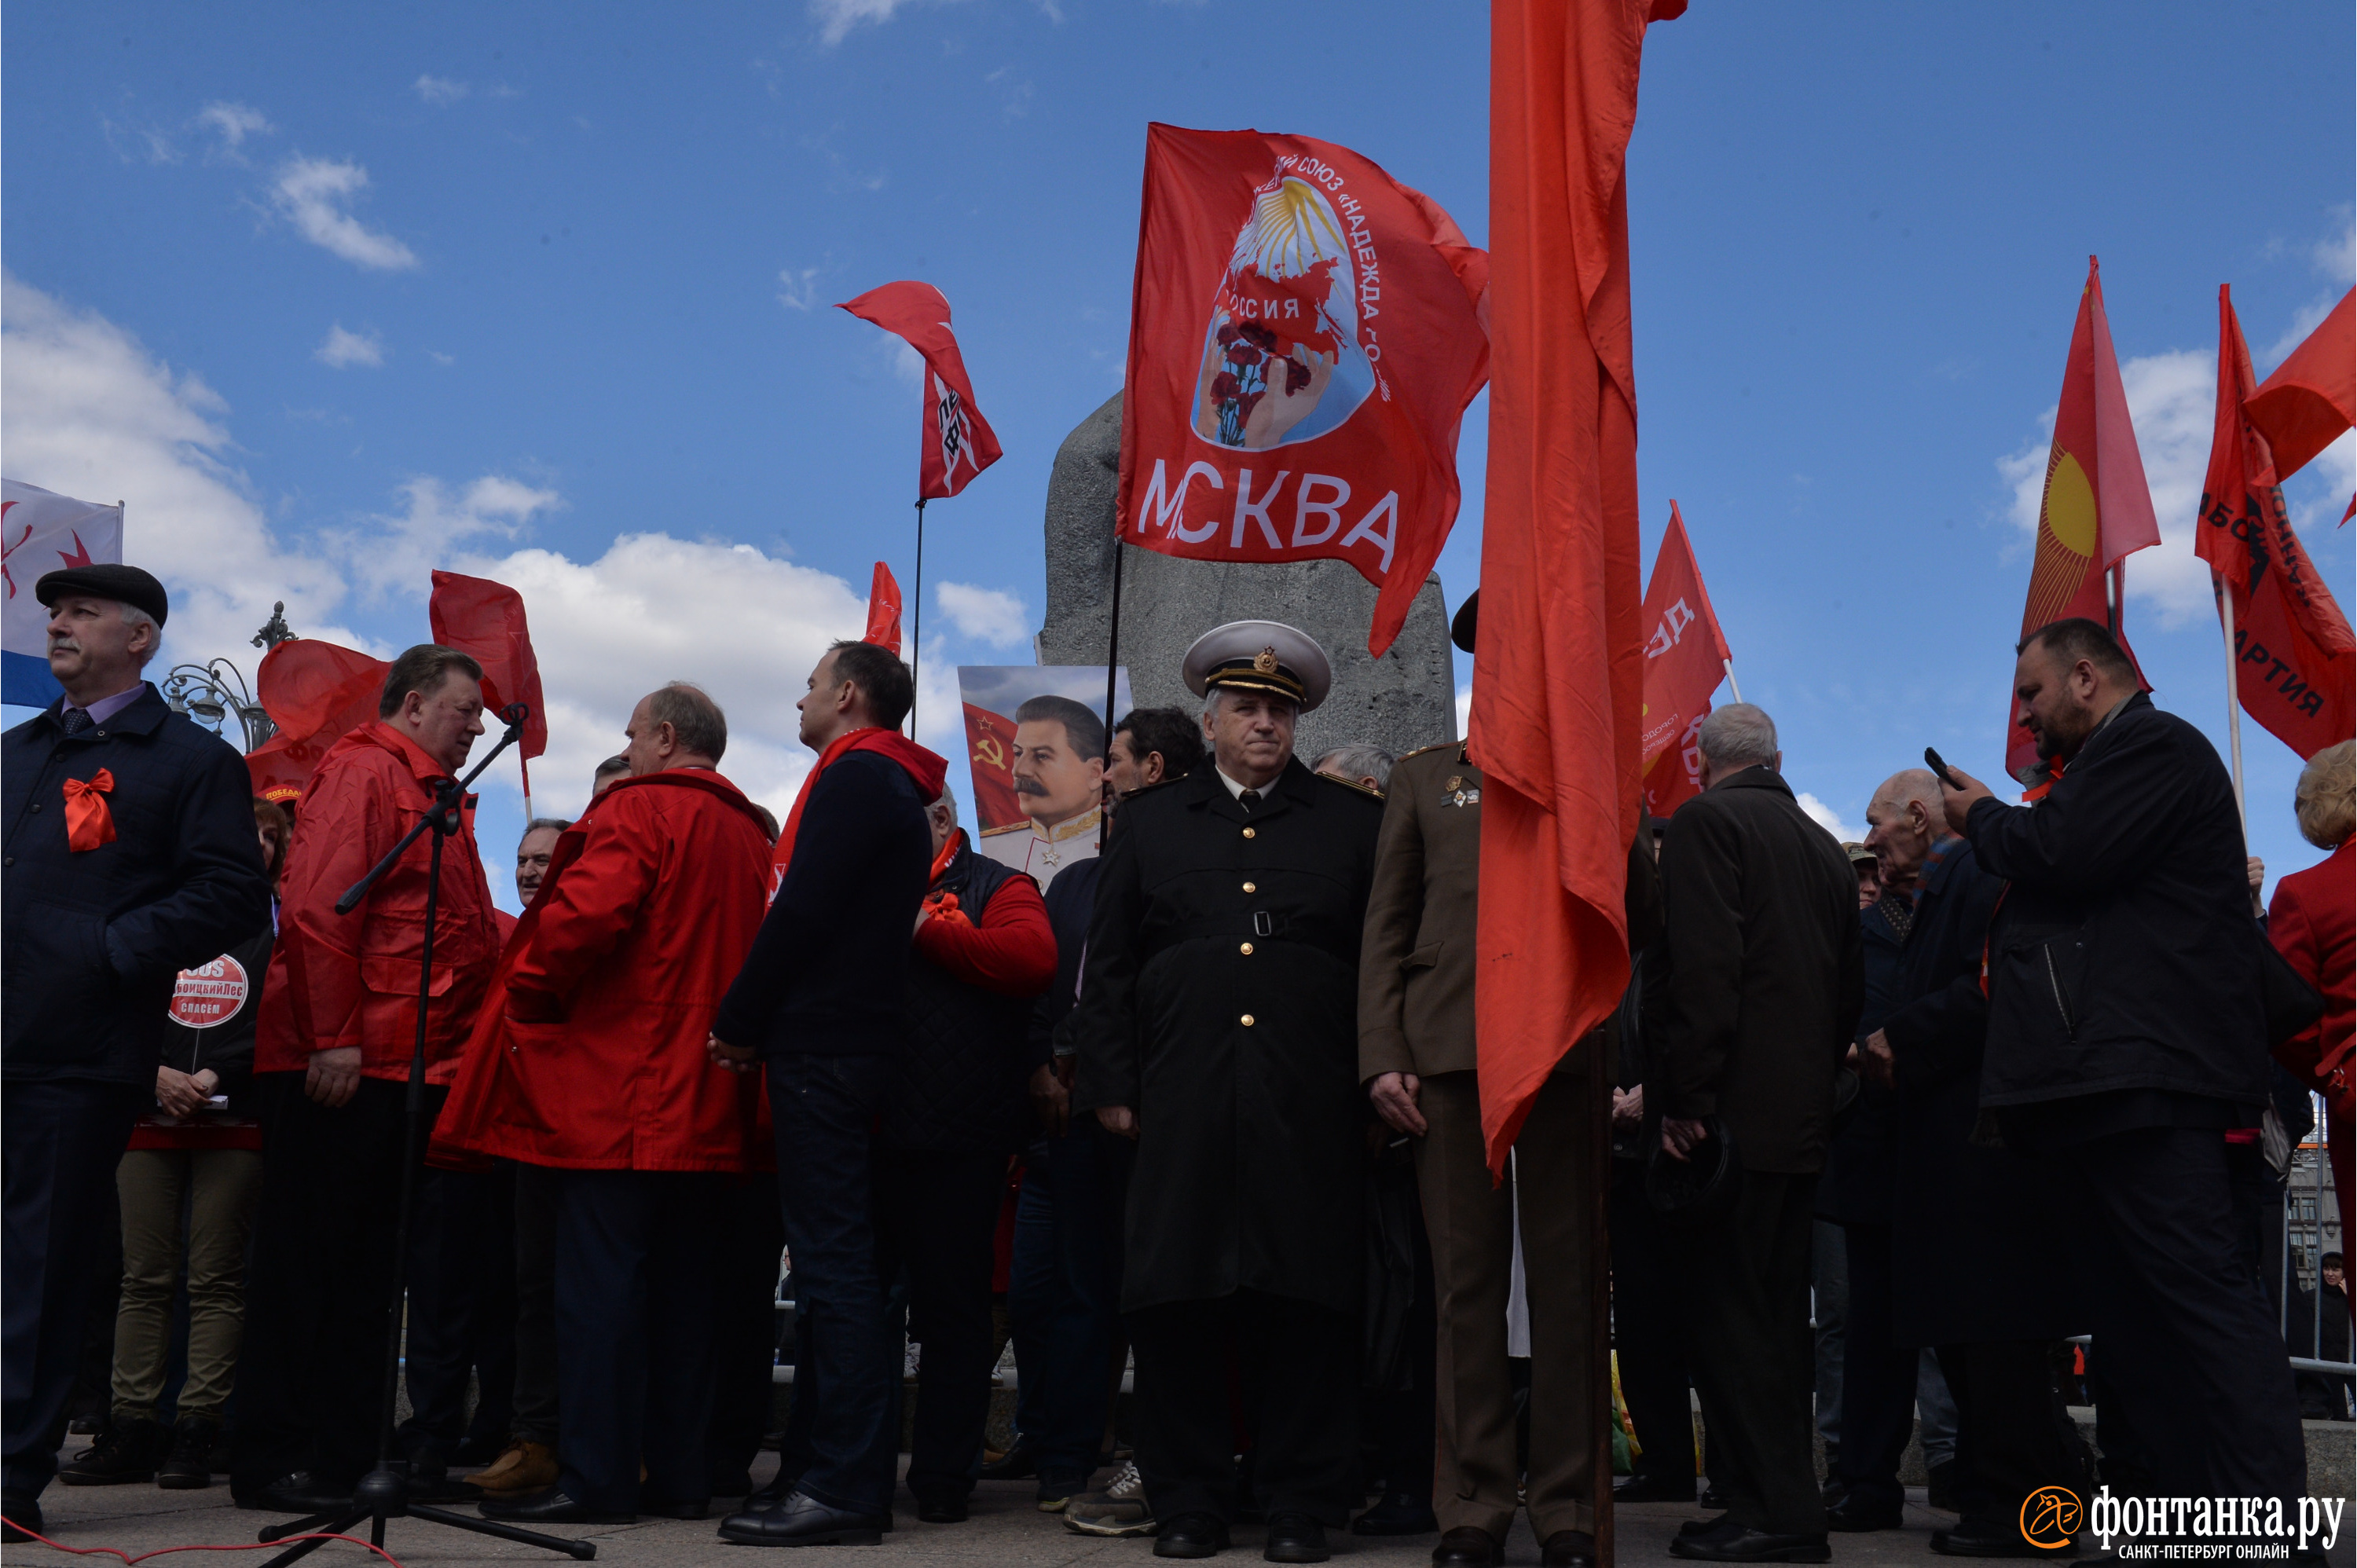 Первое мая праздник. Красная лента коммуниста. С праздником Первомая. Союз красных коммунистов.